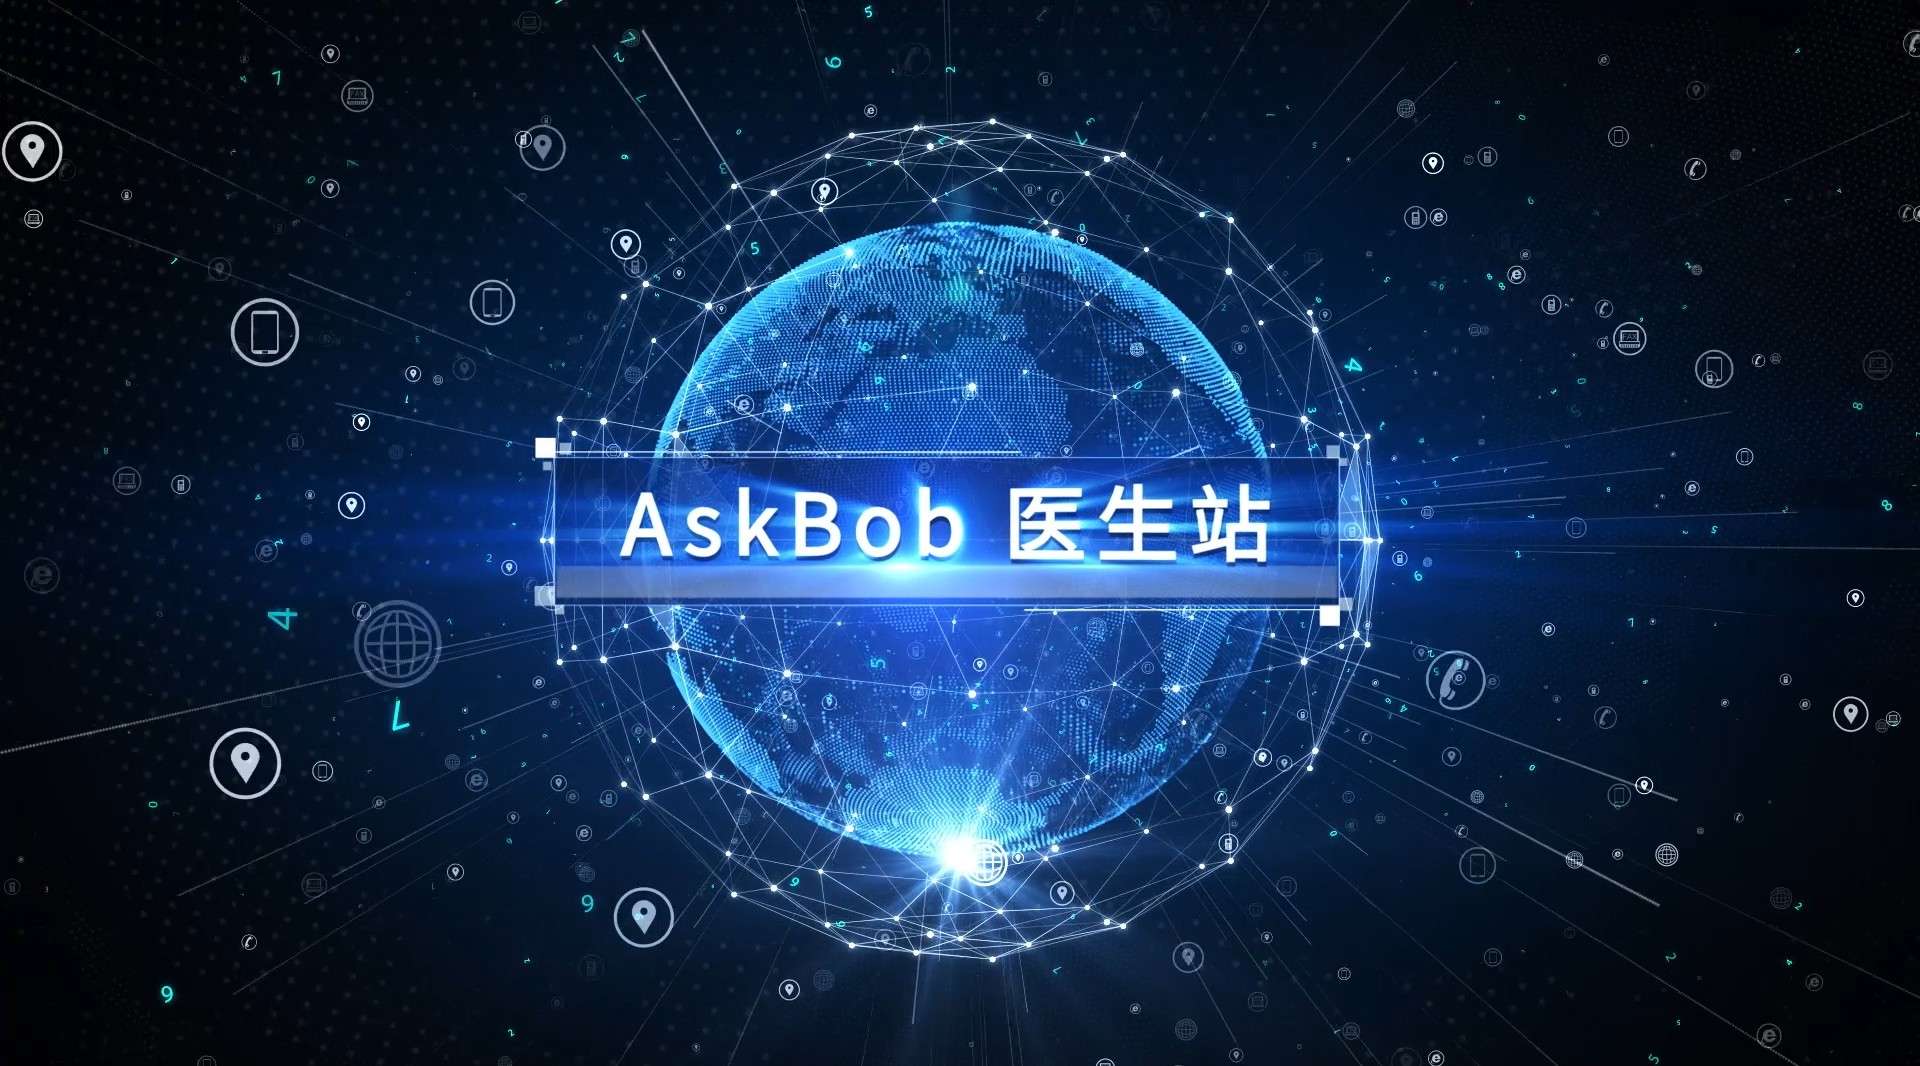 AskBOB智能AI医学平台系统发布宣传视频